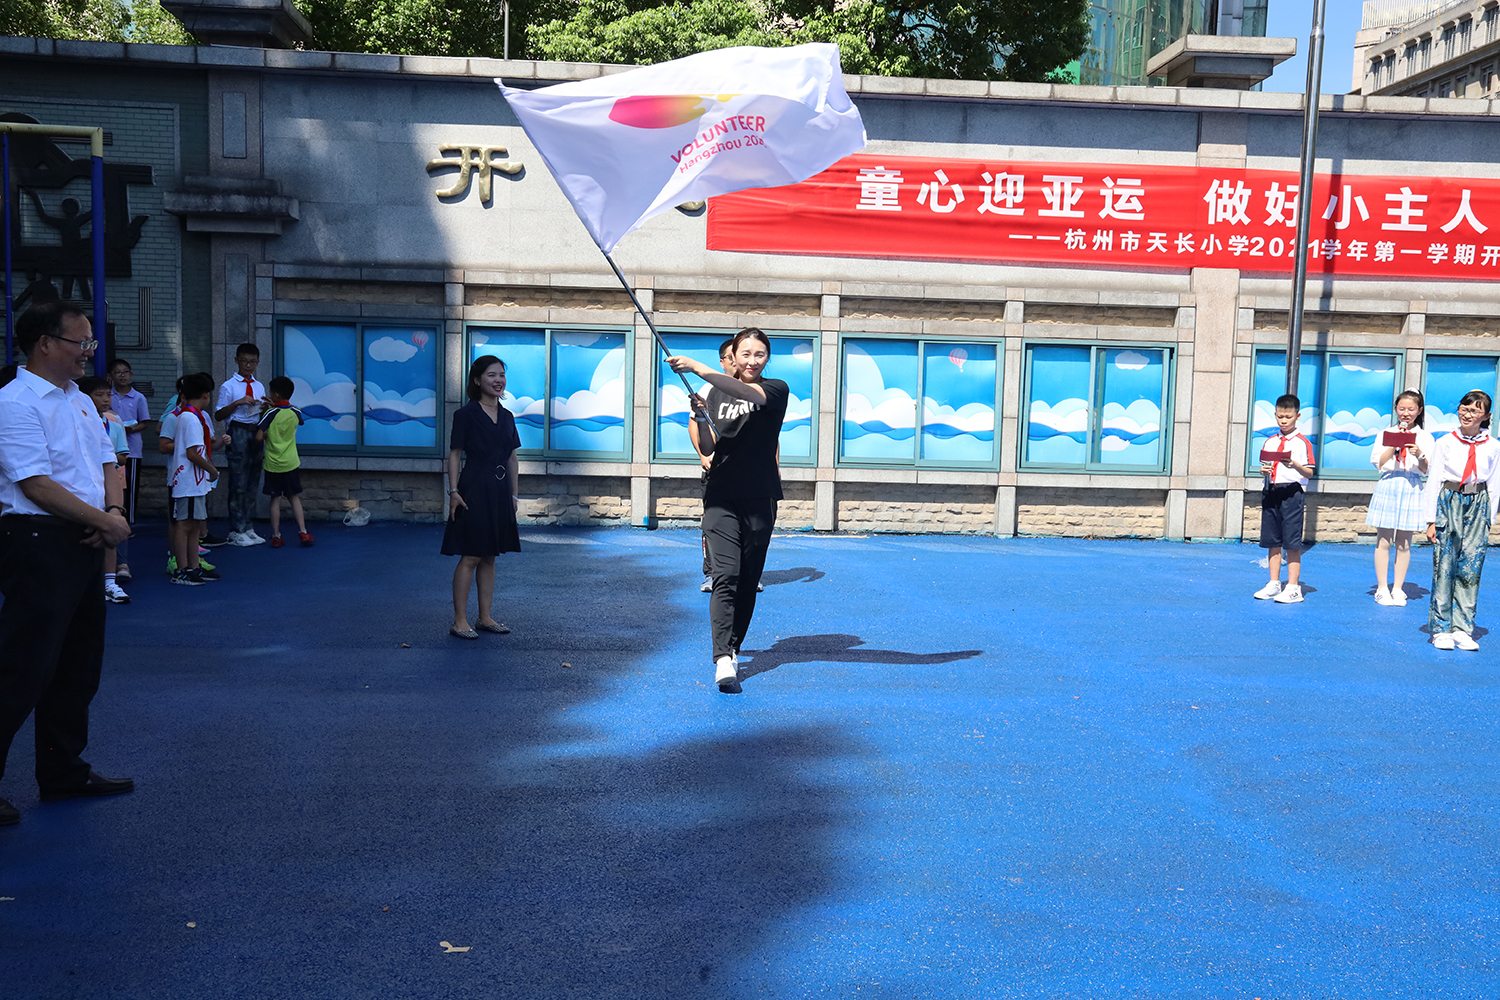 转转转、冲冲冲、跳跳跳 杭州市天长小学的这个开学典礼很“亚运”